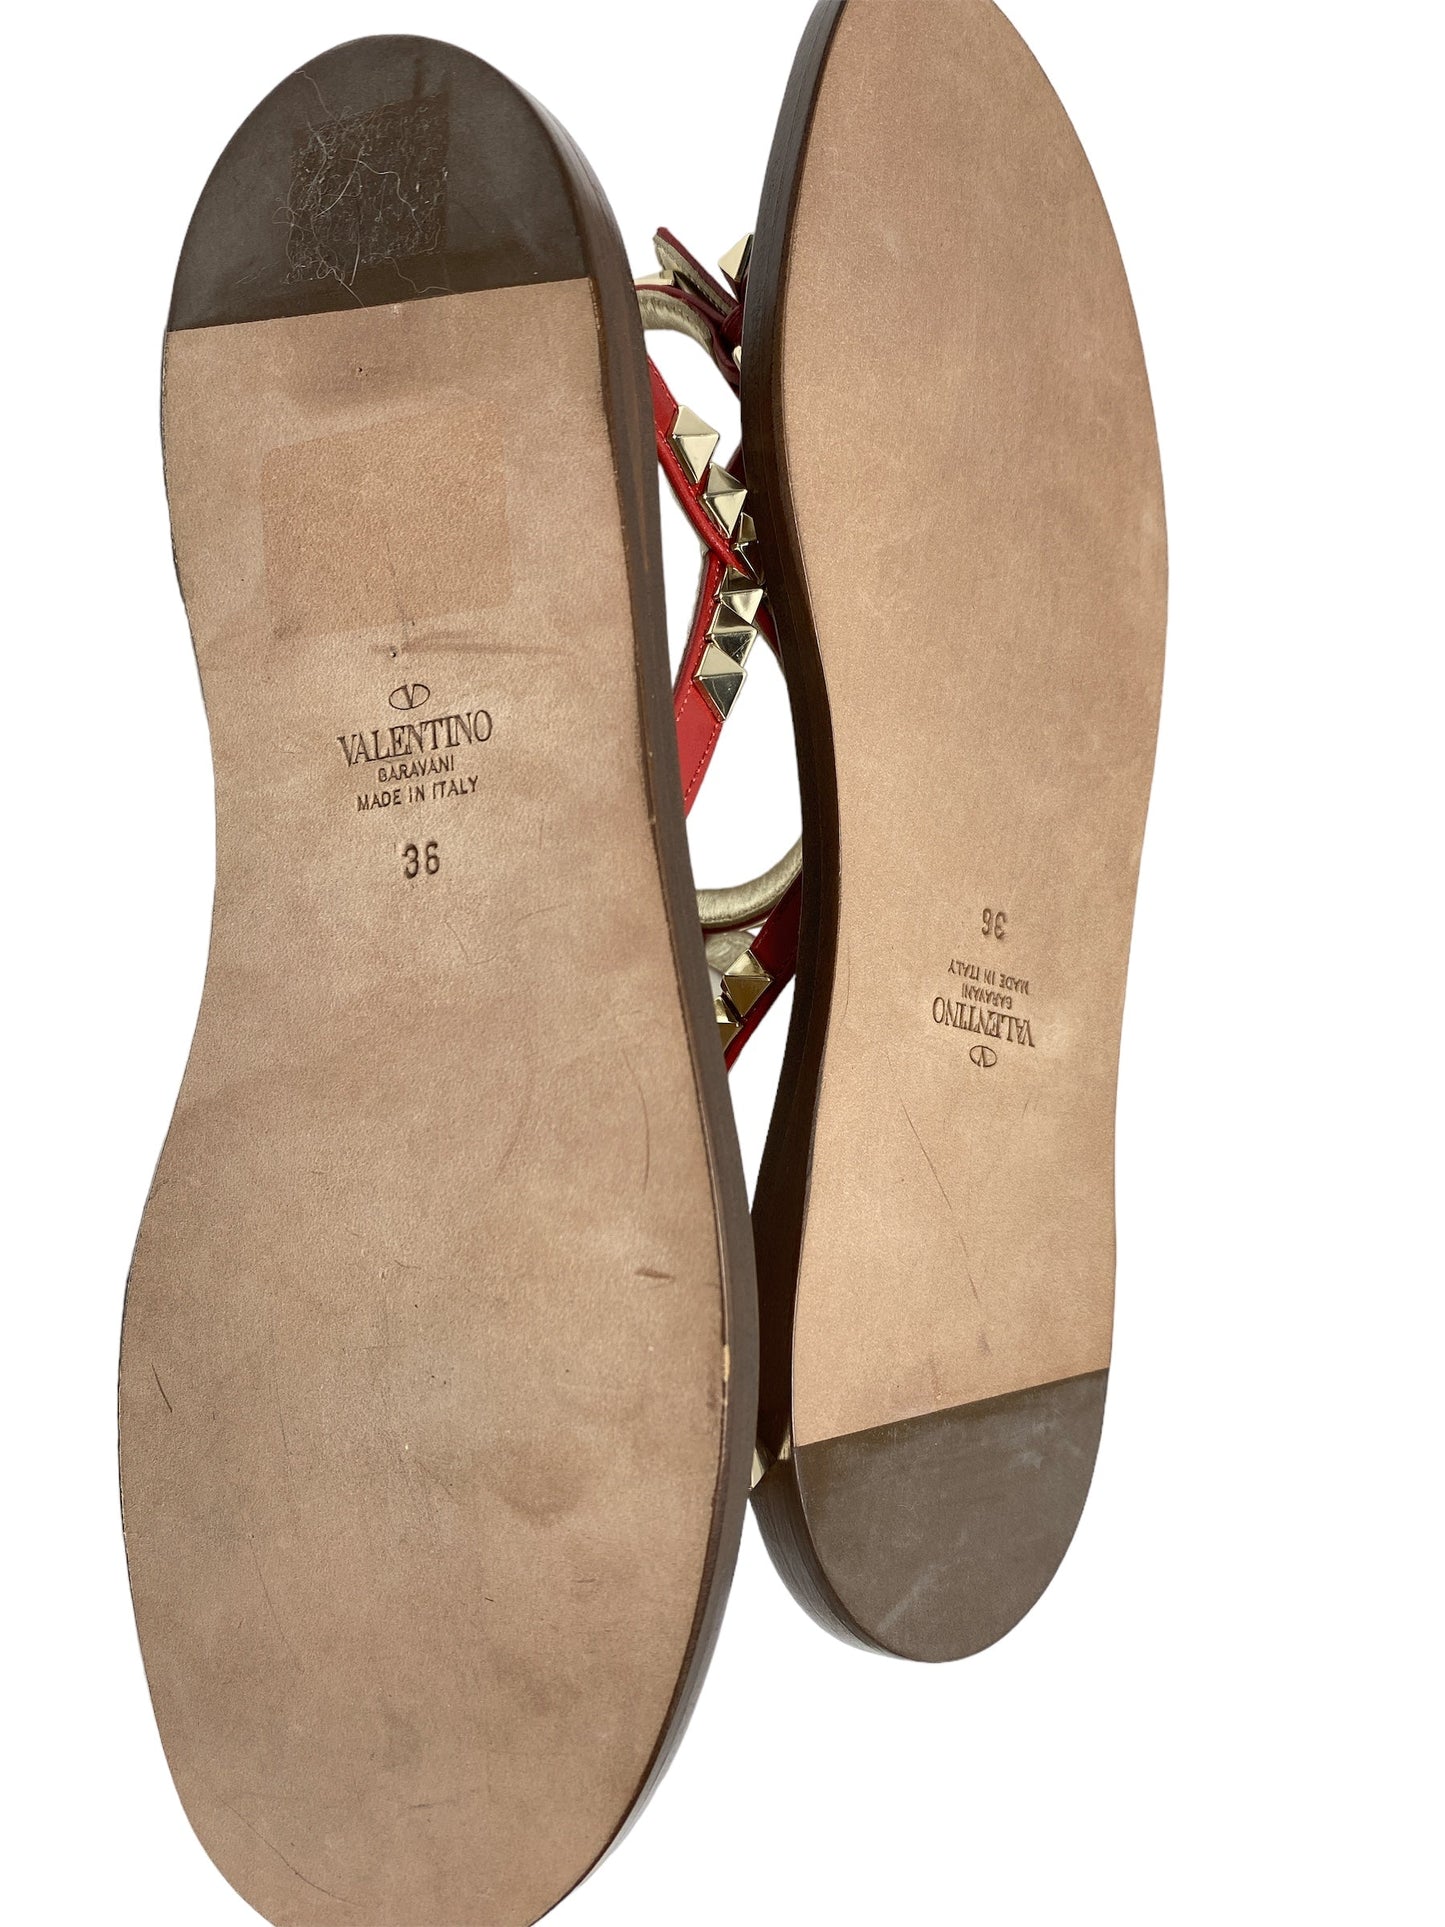 Sandals Luxury Designer By Valentino  Size: 6